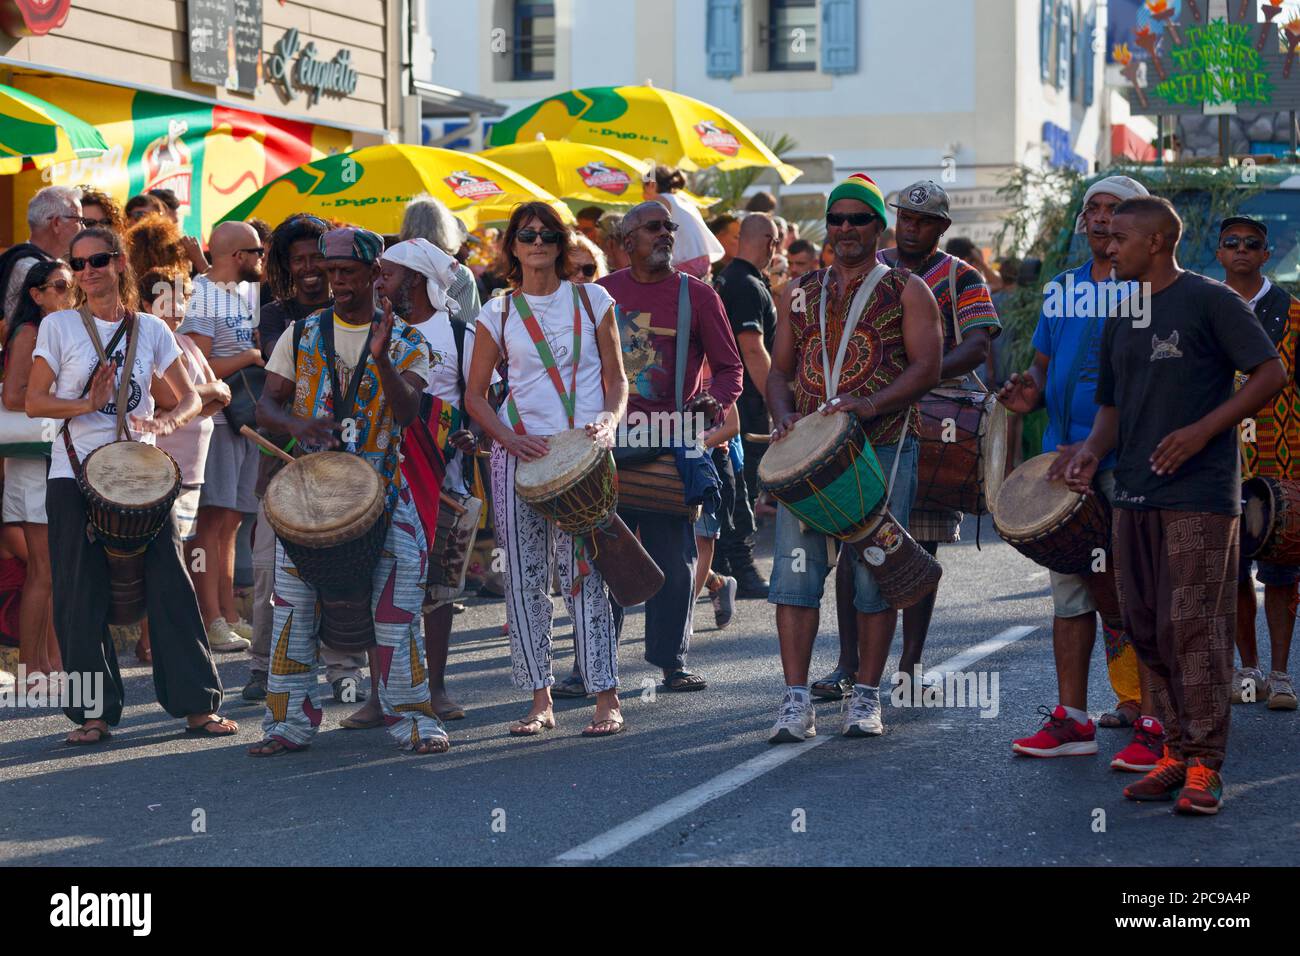 Saint-Gilles les bains, la Réunion - 25 juin 2017 : groupe de percussionnistes jouant avec leur djembe pendant le carnaval du Grand Boucan. Banque D'Images